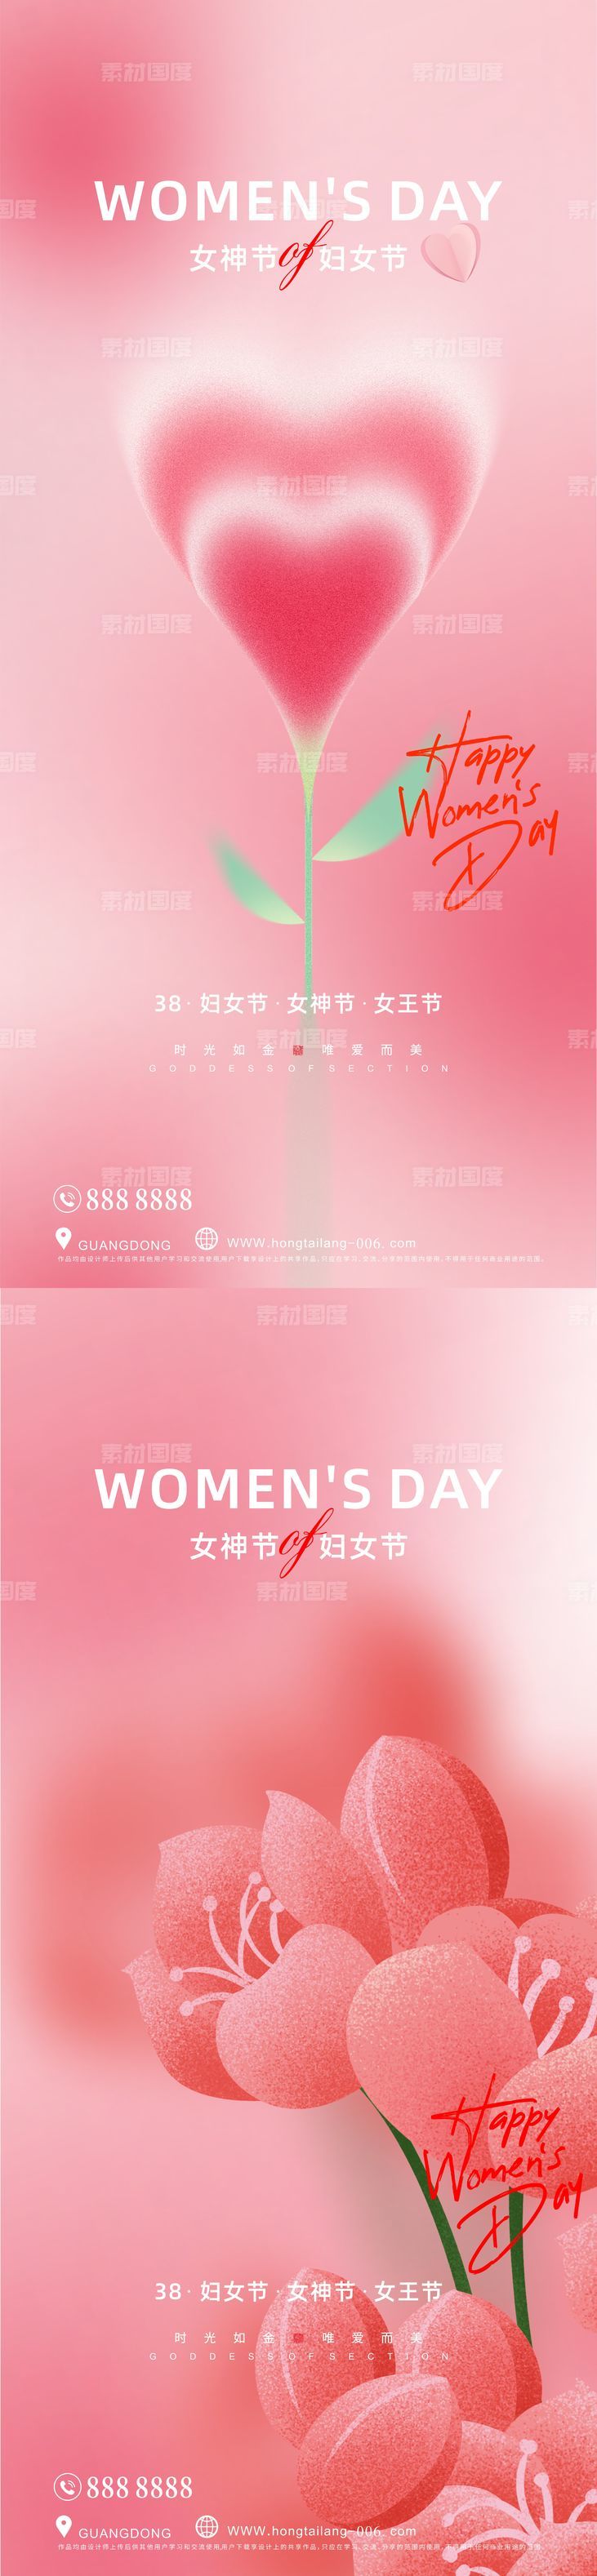 三八 妇女节 女神节 海报